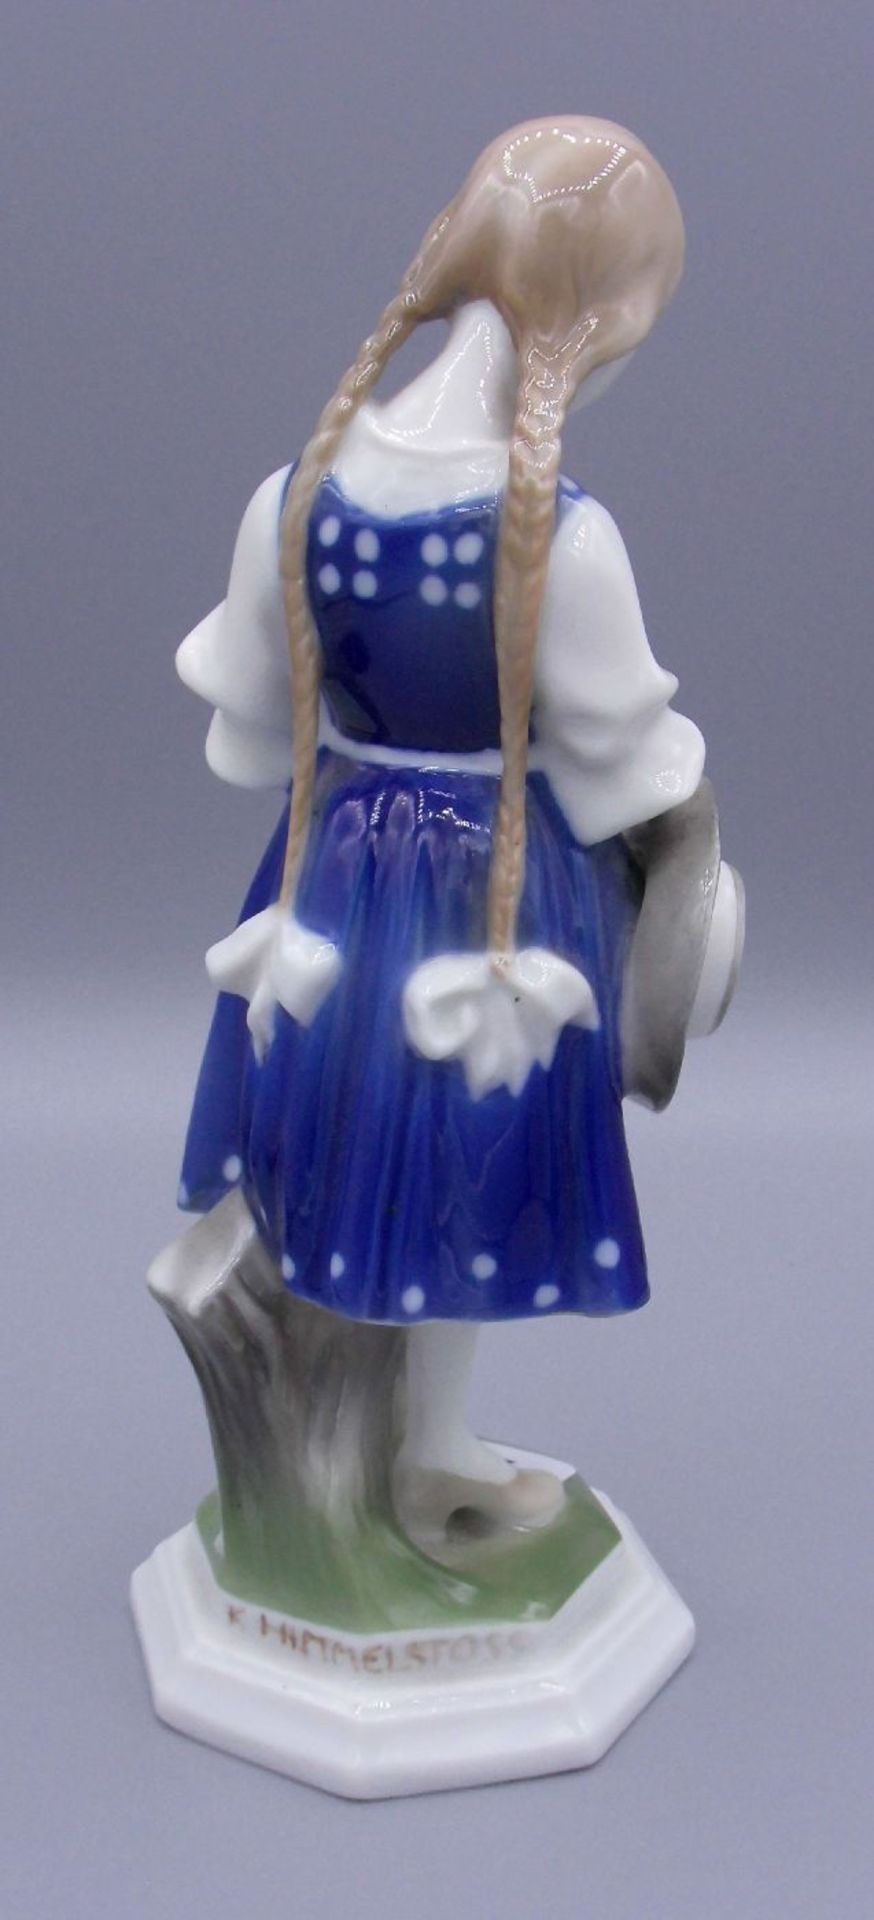 PORZELLANFIGUR "Tiroler Mädchen" / porcelain sculpture of a tyrolean girl, Manufaktur Rosenthal, - Bild 3 aus 6